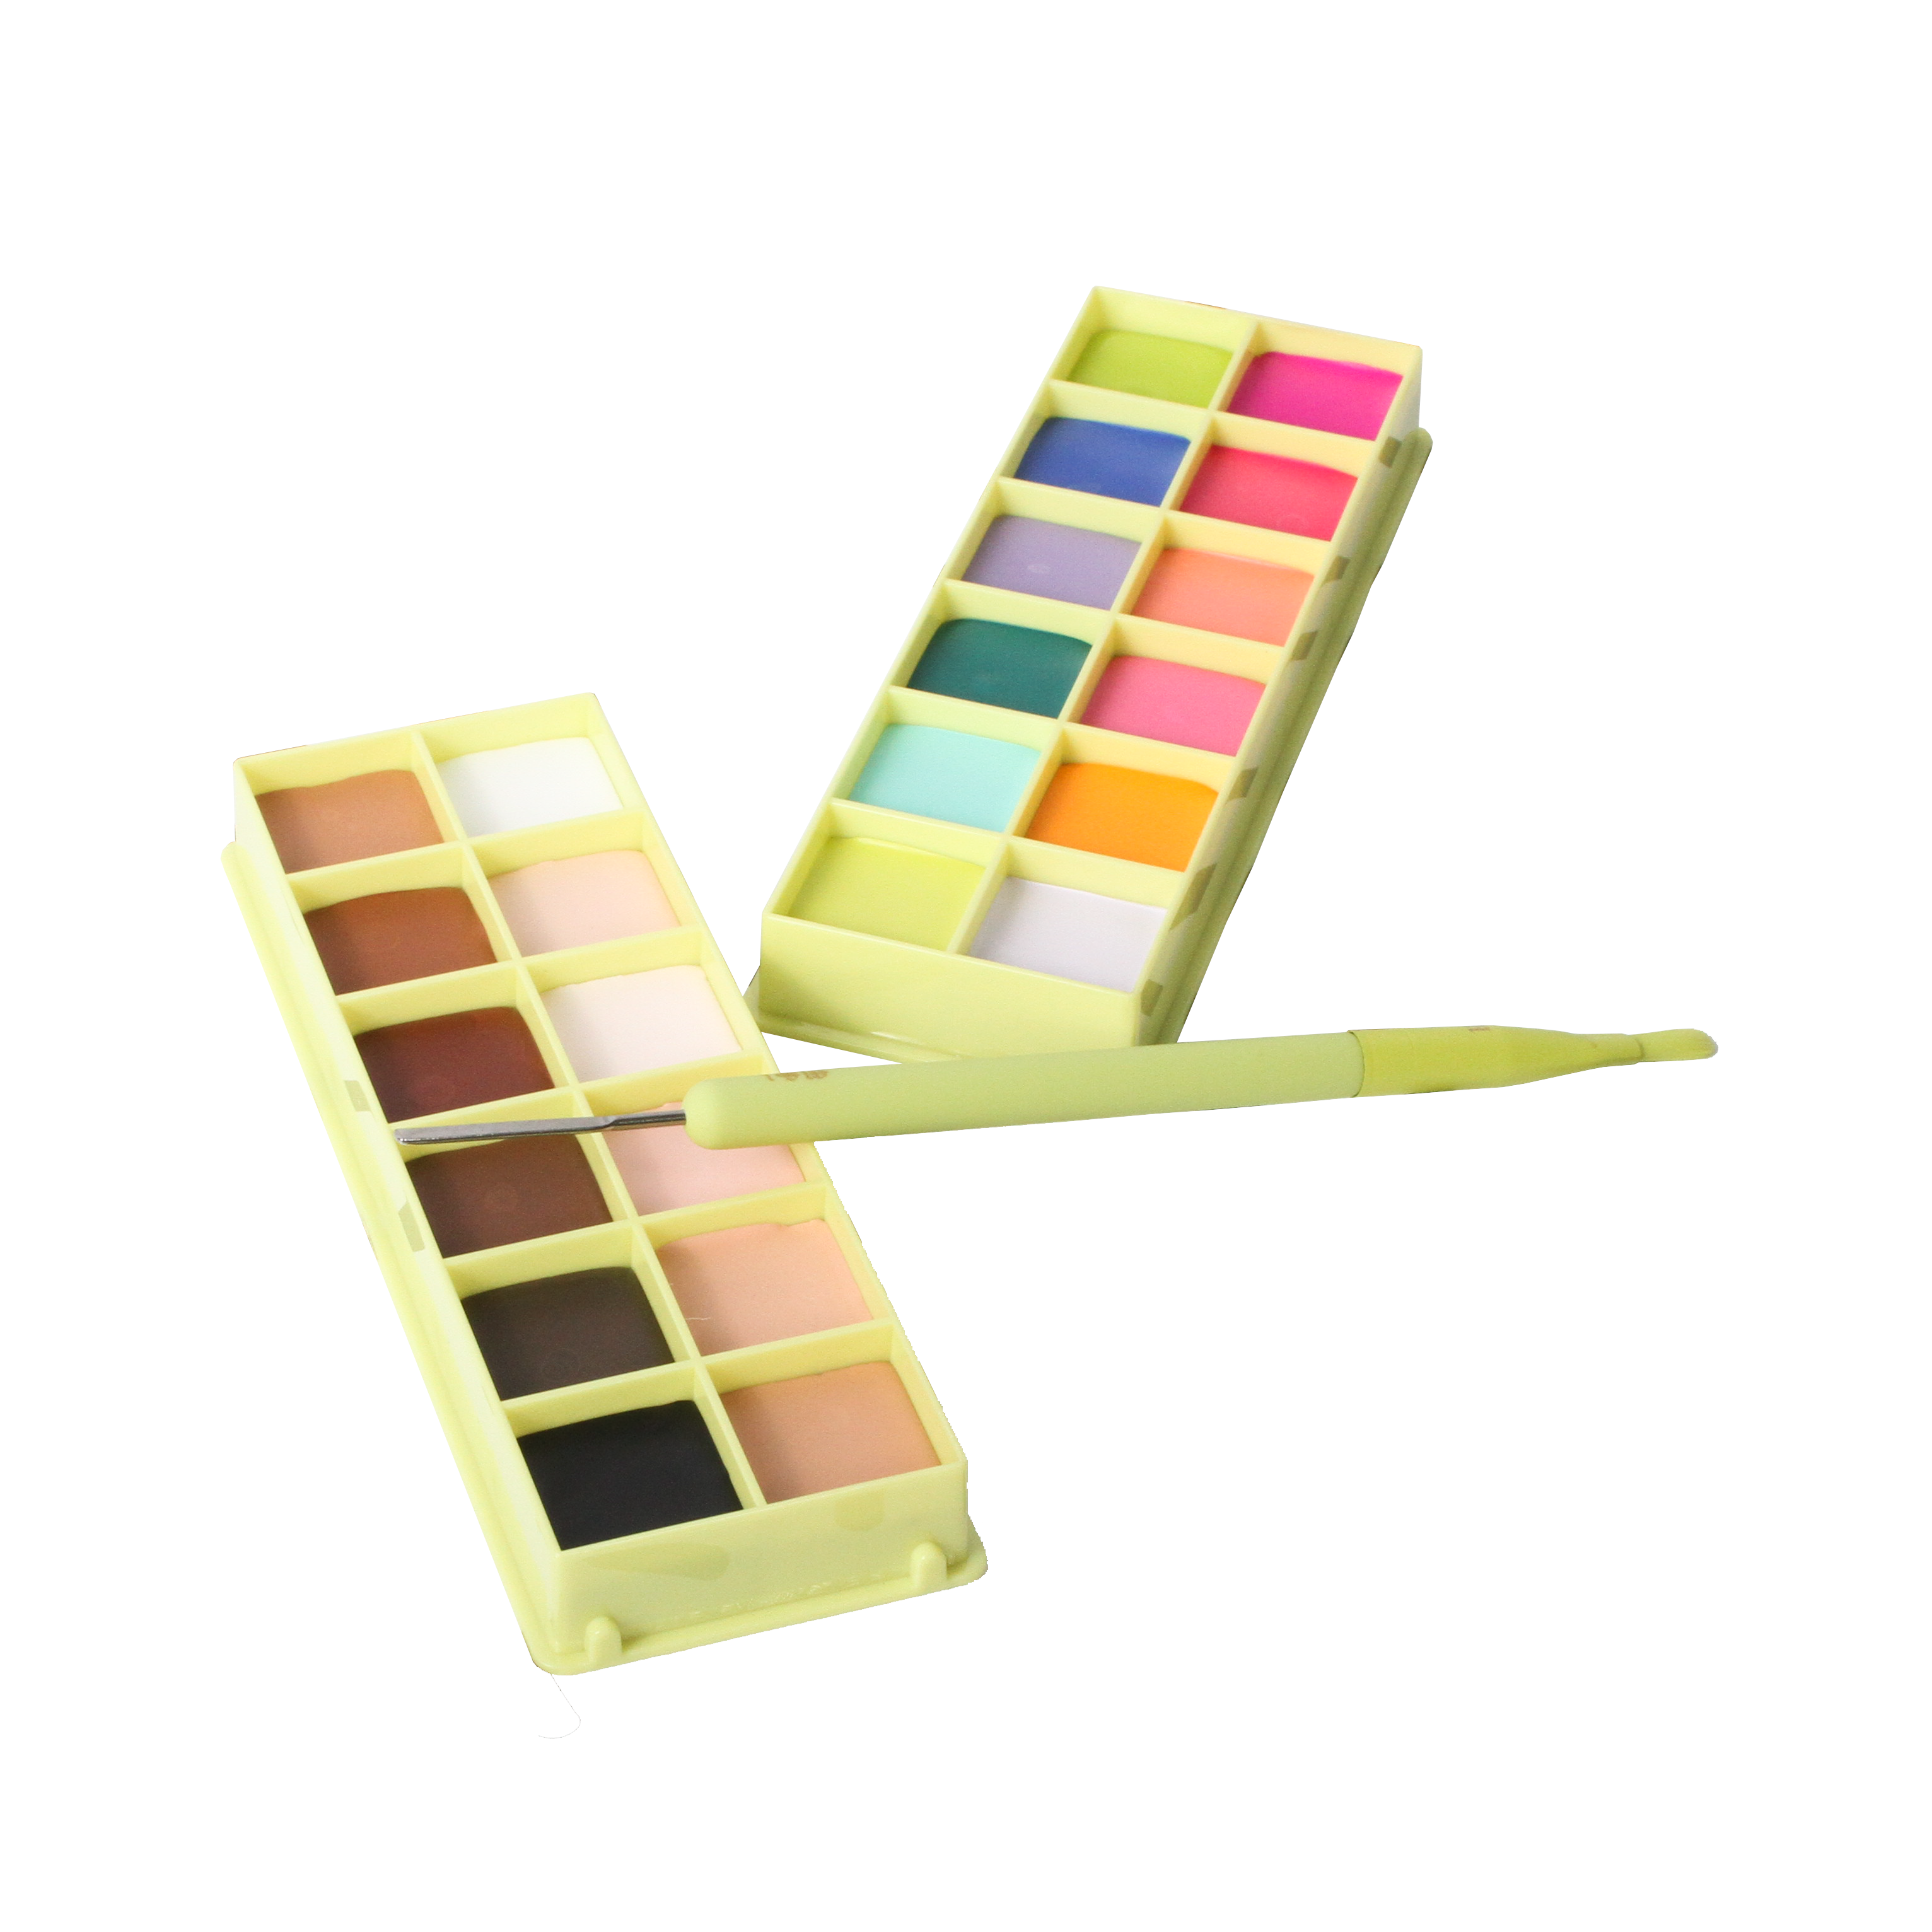 Colour Case Cosmetic Paint Palette & Brush Set